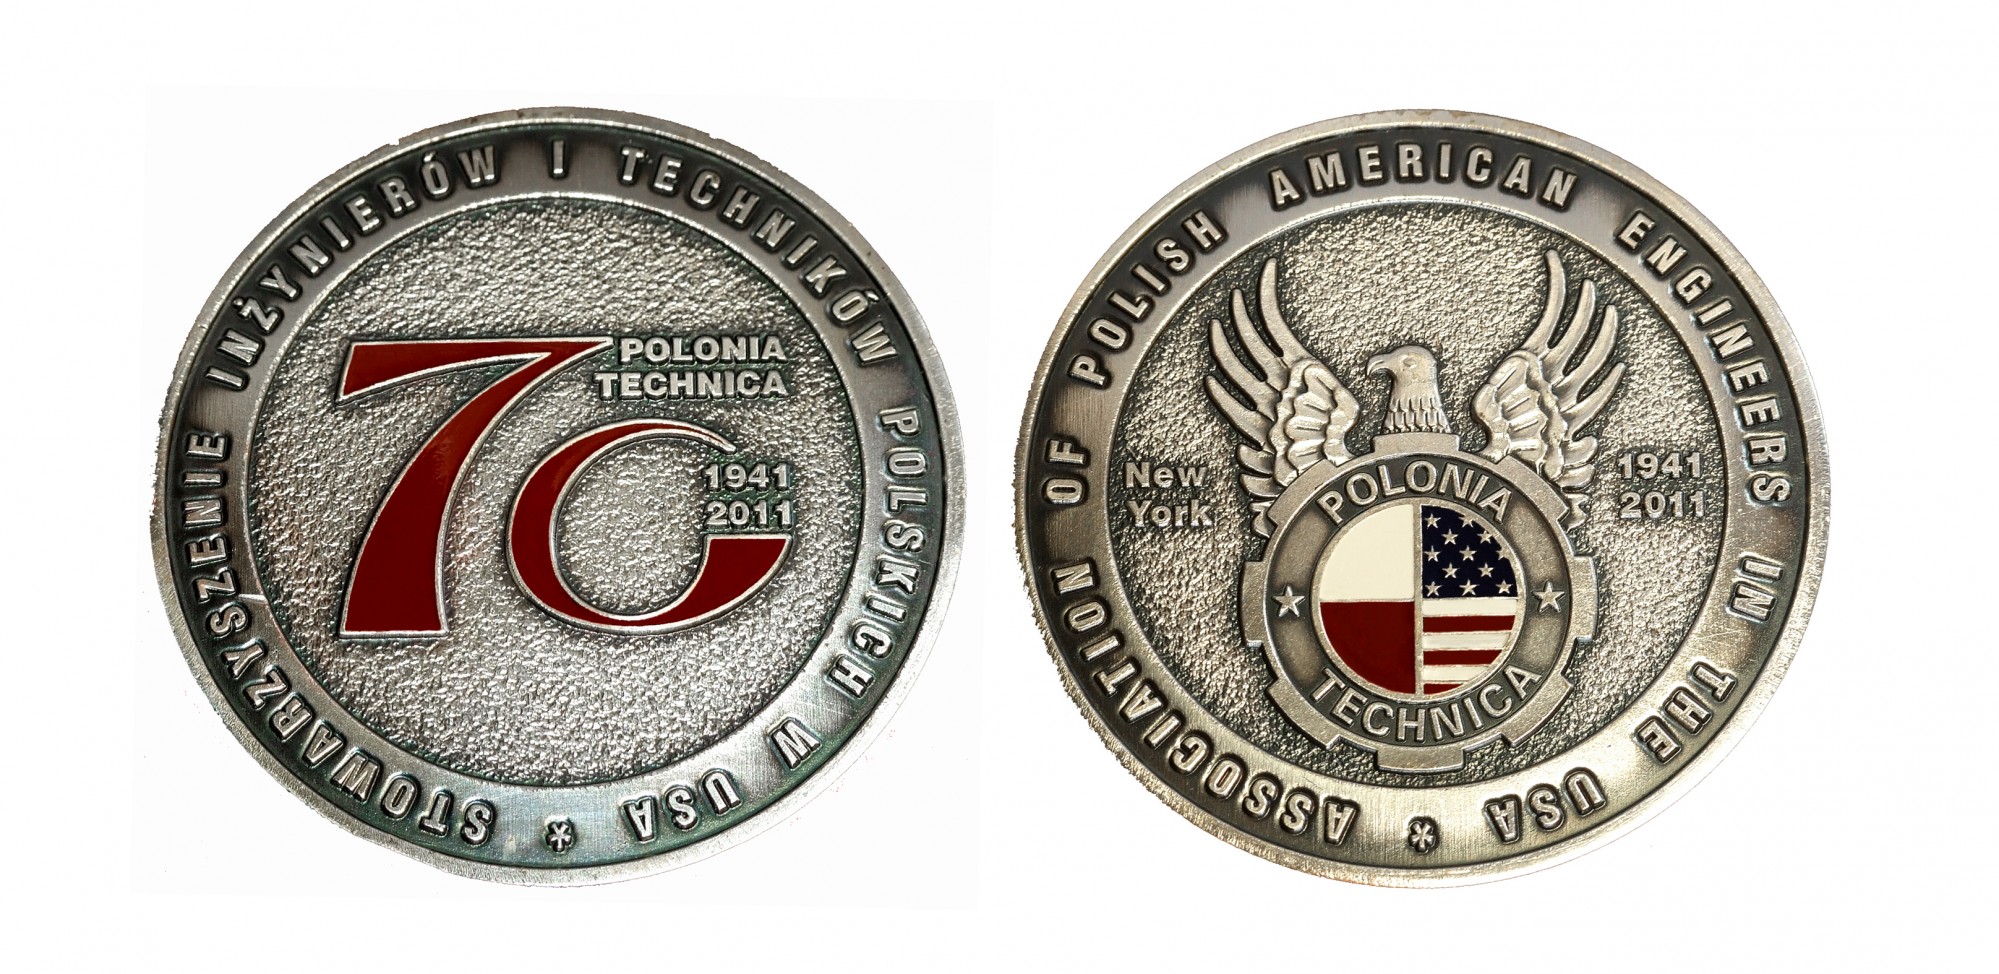 Medal okolicznościowy „Polonia Technica” dla Stowarzyszenia Inżynierów i Techników Polskich w Stanach Zjednoczonych Ameryki Północnej; średnica 70mm; brąz posrebrzany i oksydowany